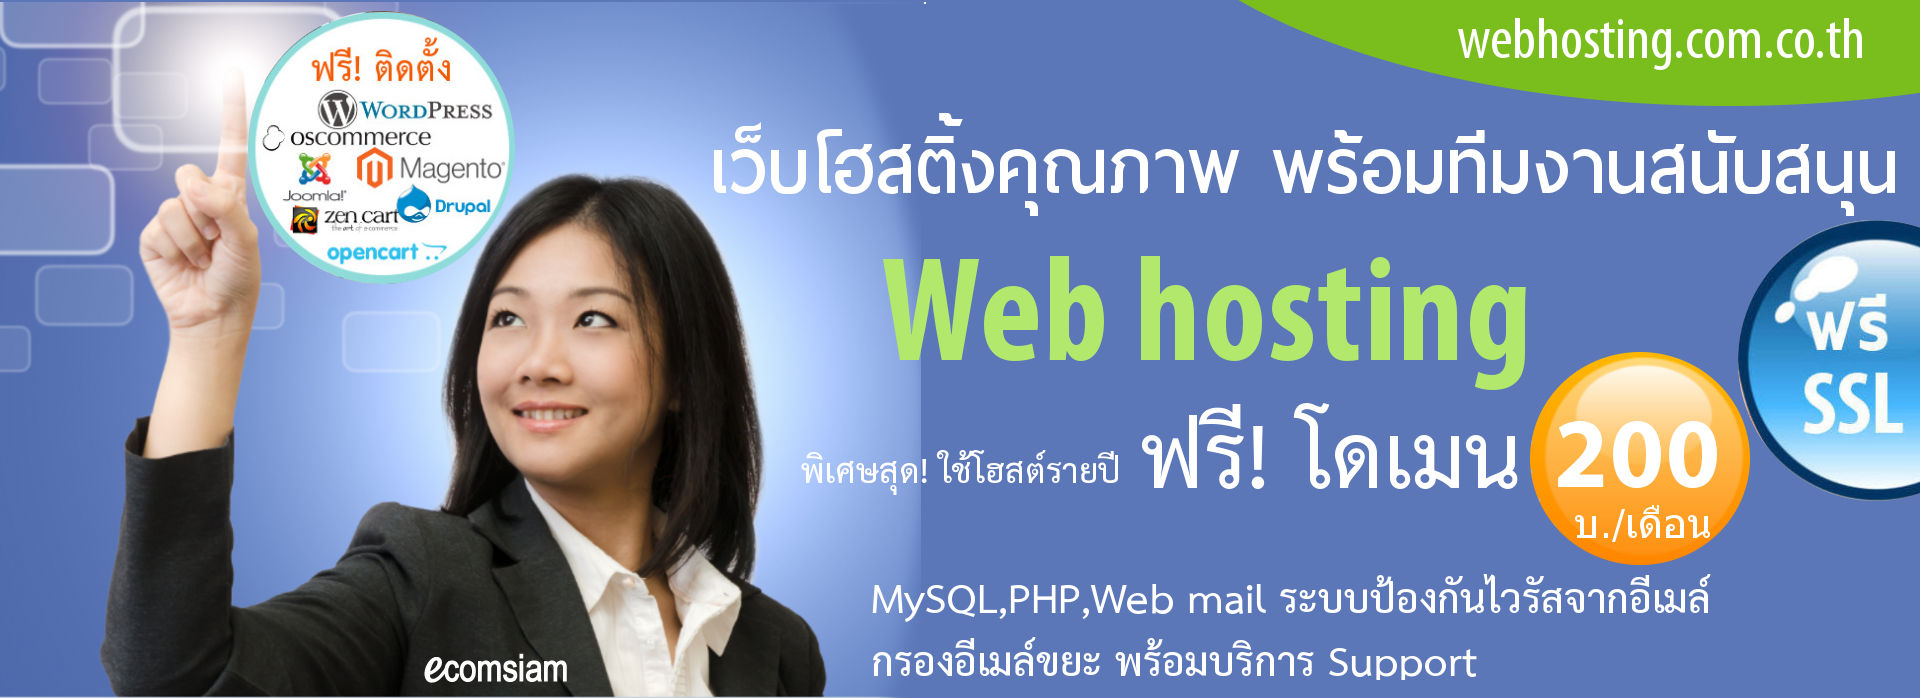 เว็บโฮสติ้ง ฟรีโดเมนเนม ฟรี SSL - web-hosting-thailand-free domain advance plan banner